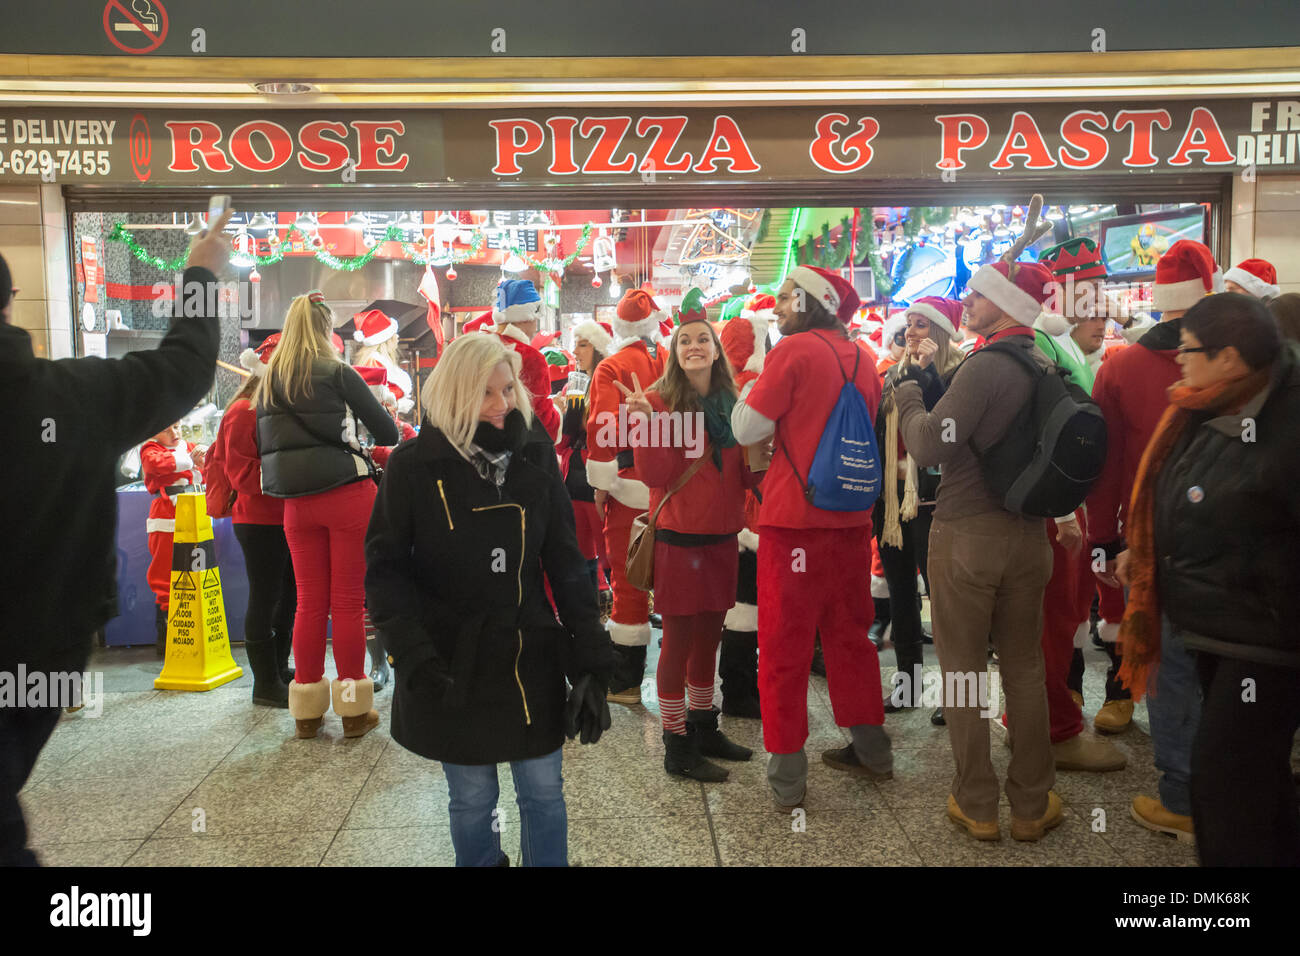 New York, USA. 14 décembre 2013. Les fêtards de Noël arrivent à la Pennsylvania Station pour le SantaCon annuel à New York . Santacon, principalement un pub crawl à Santa et d'autres connexes Noël costumes, attire des milliers de masqueraders allant de bar en bar. Les buveurs ont été encouragés à s'imprégner dans les établissements qui participent à Toys for Tots. Cette année, certaines communautés se plaignent des vomissements, des mictions et autres débordements qui accompagne l'événement entraînant une répression policière et de transit. Crédit : Richard Levine/Alamy Live News Banque D'Images